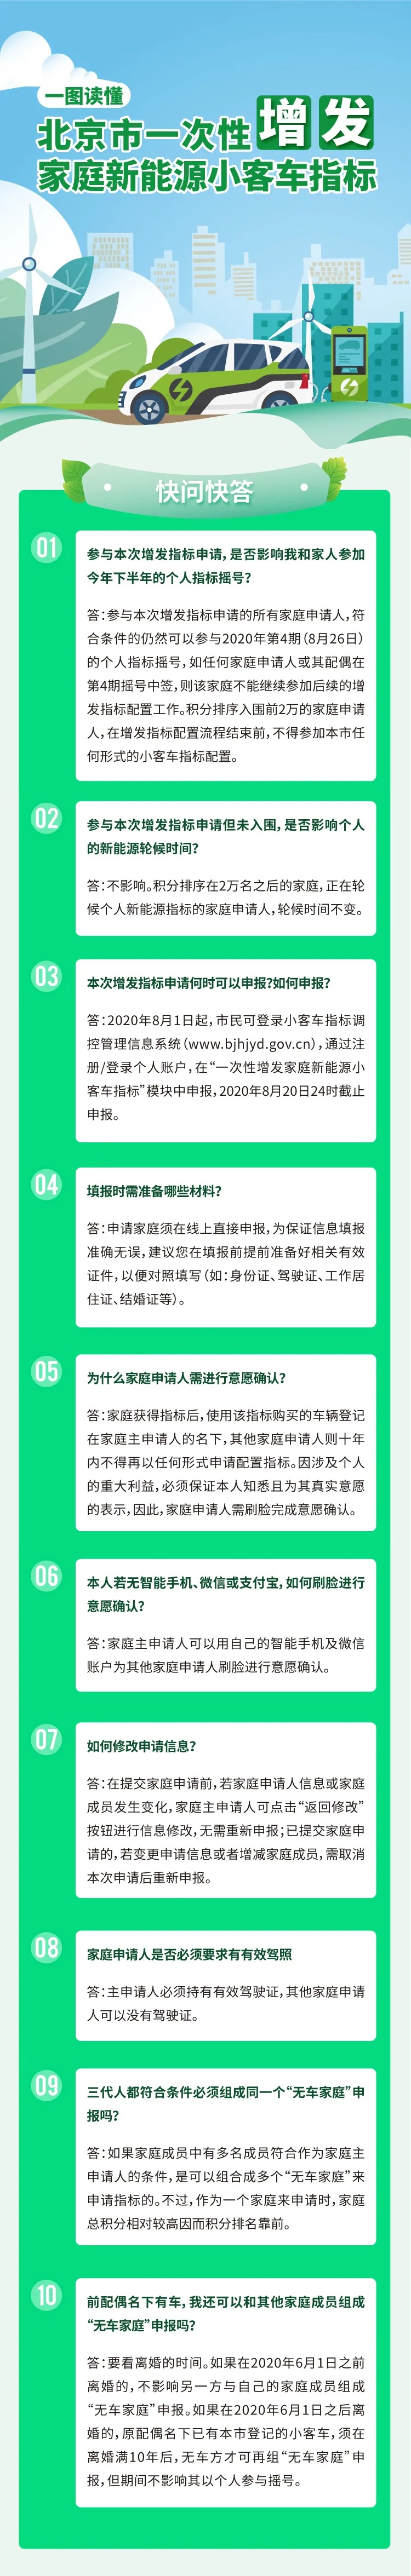 图解：北京市一次性增发家庭新能源小客车指标快问快答.jpg